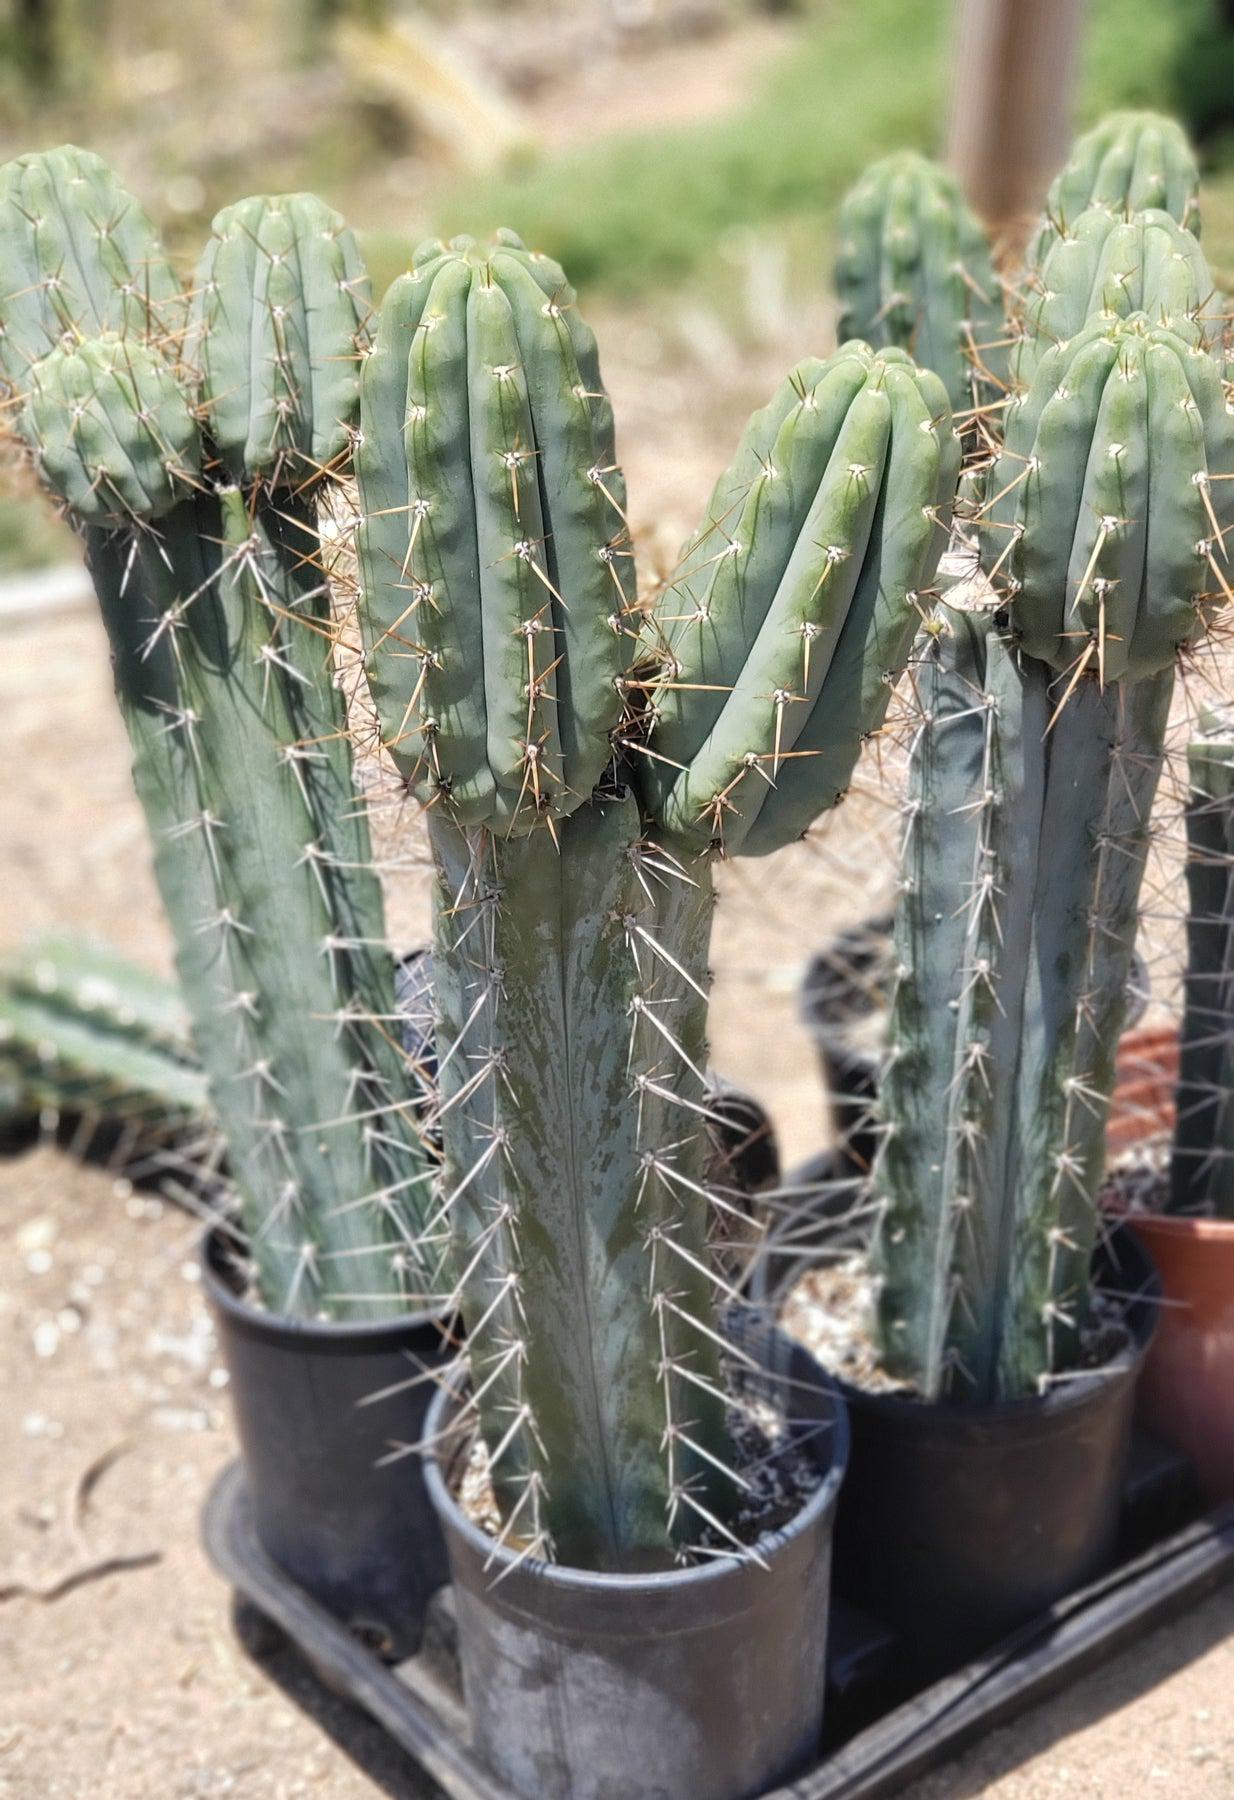 #EC97 EXACT Trichocereus Peruvianus "Lumberjack" Cactus Cutting 5-6"-Cactus - Large - Exact-The Succulent Source